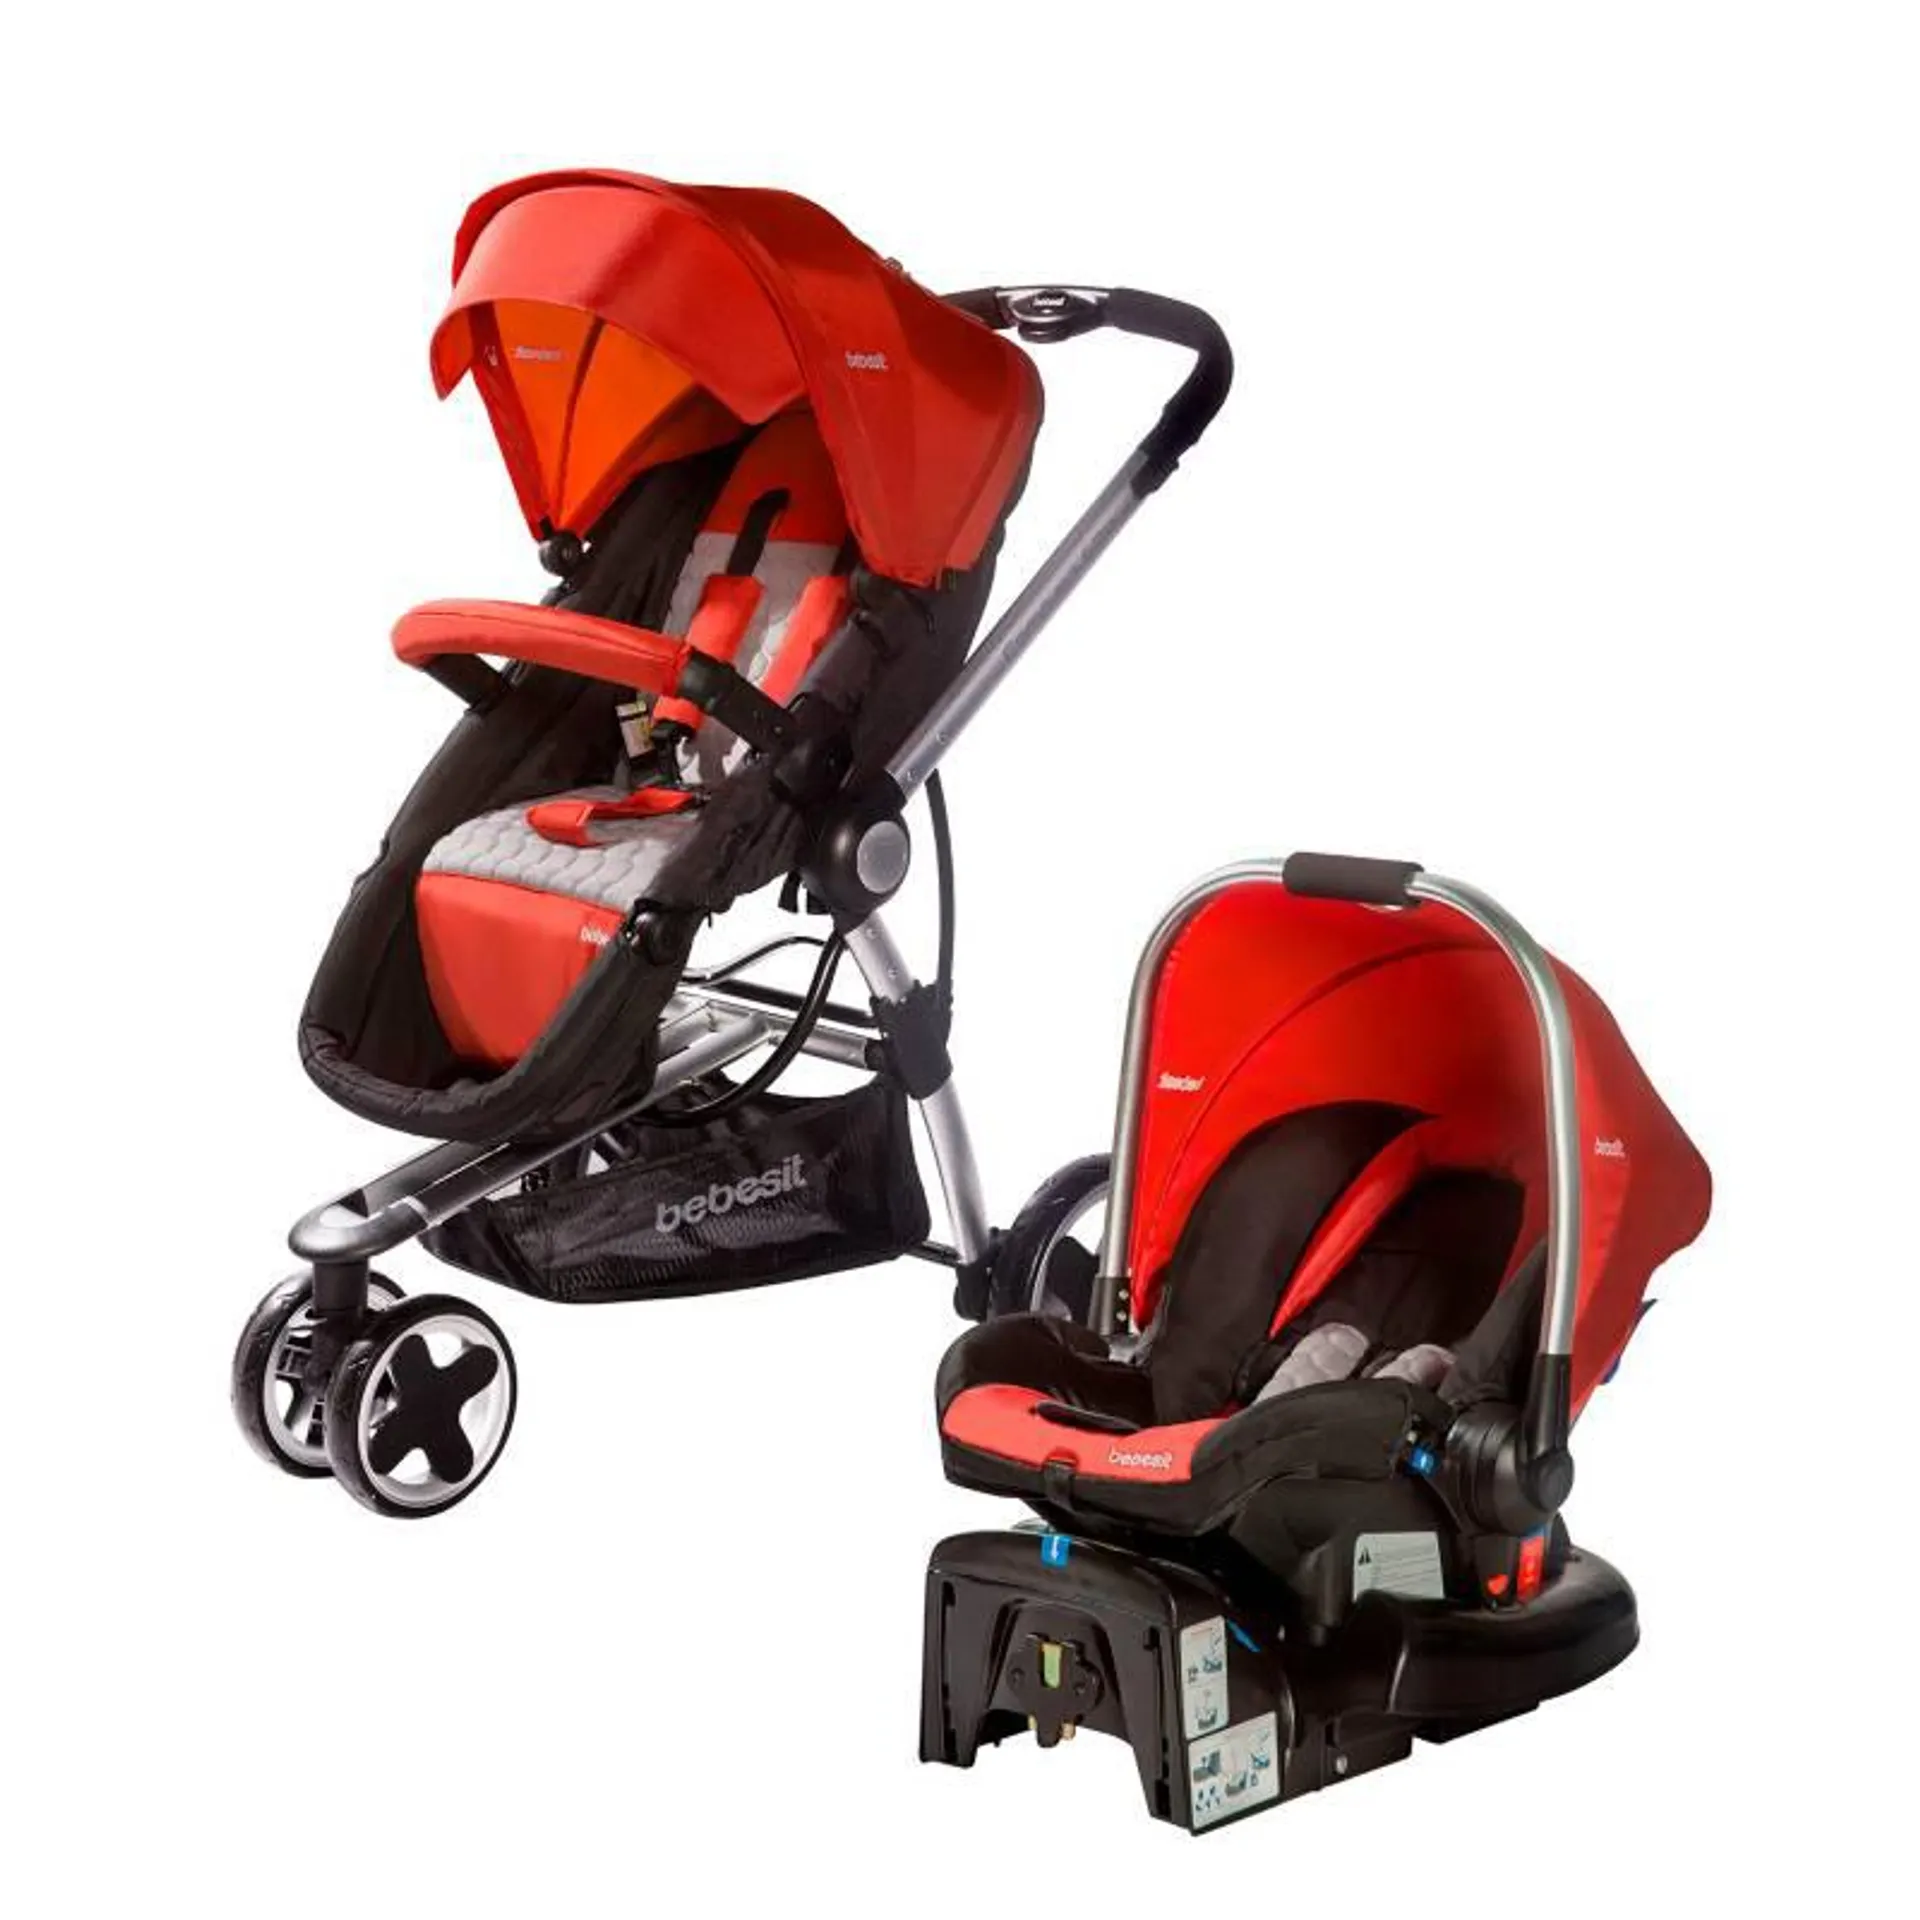 Coche para bebé Bebesit Compass Elite Travel system tres ruedas Rojo